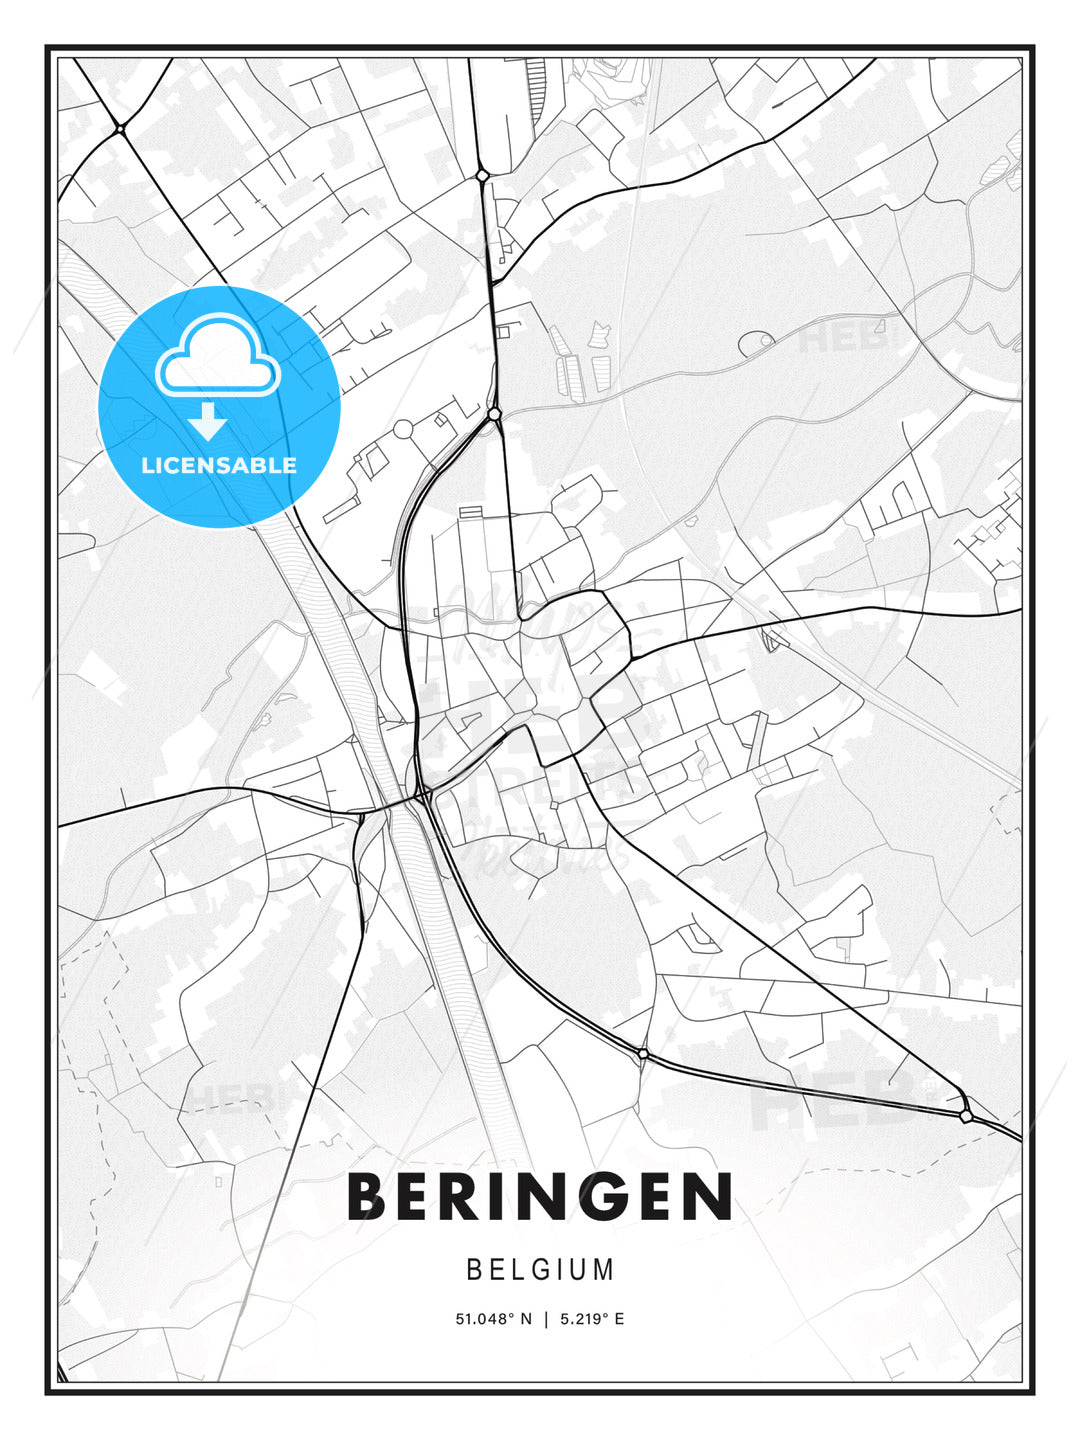 Beringen, Belgium, Modern Print Template in Various Formats - HEBSTREITS Sketches